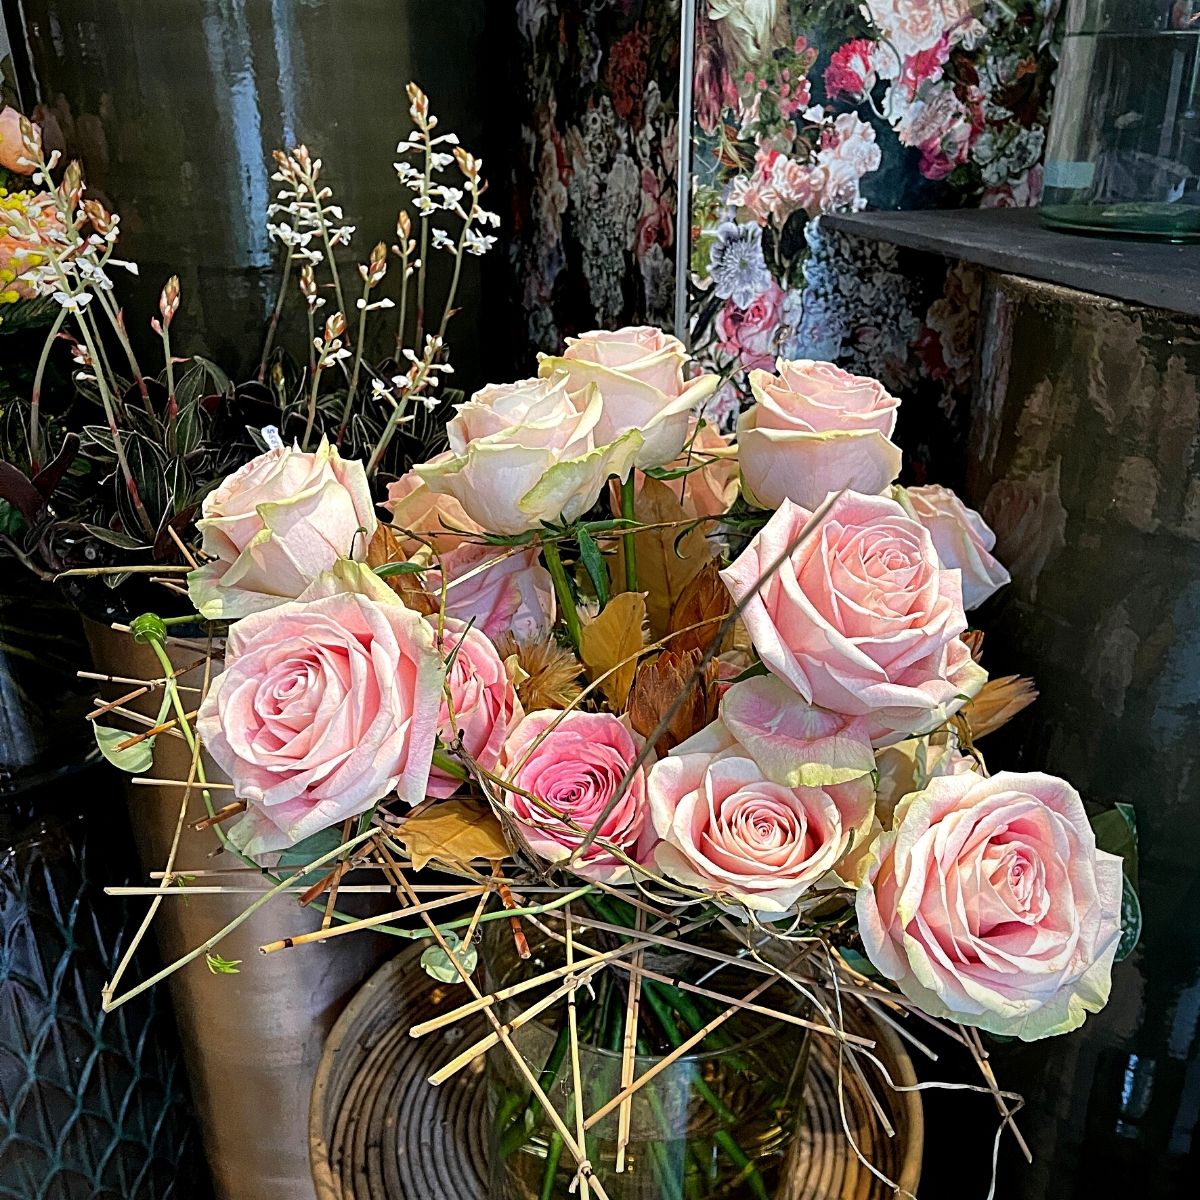 Rose Candy Horizon flowers by Fiori Bloemen